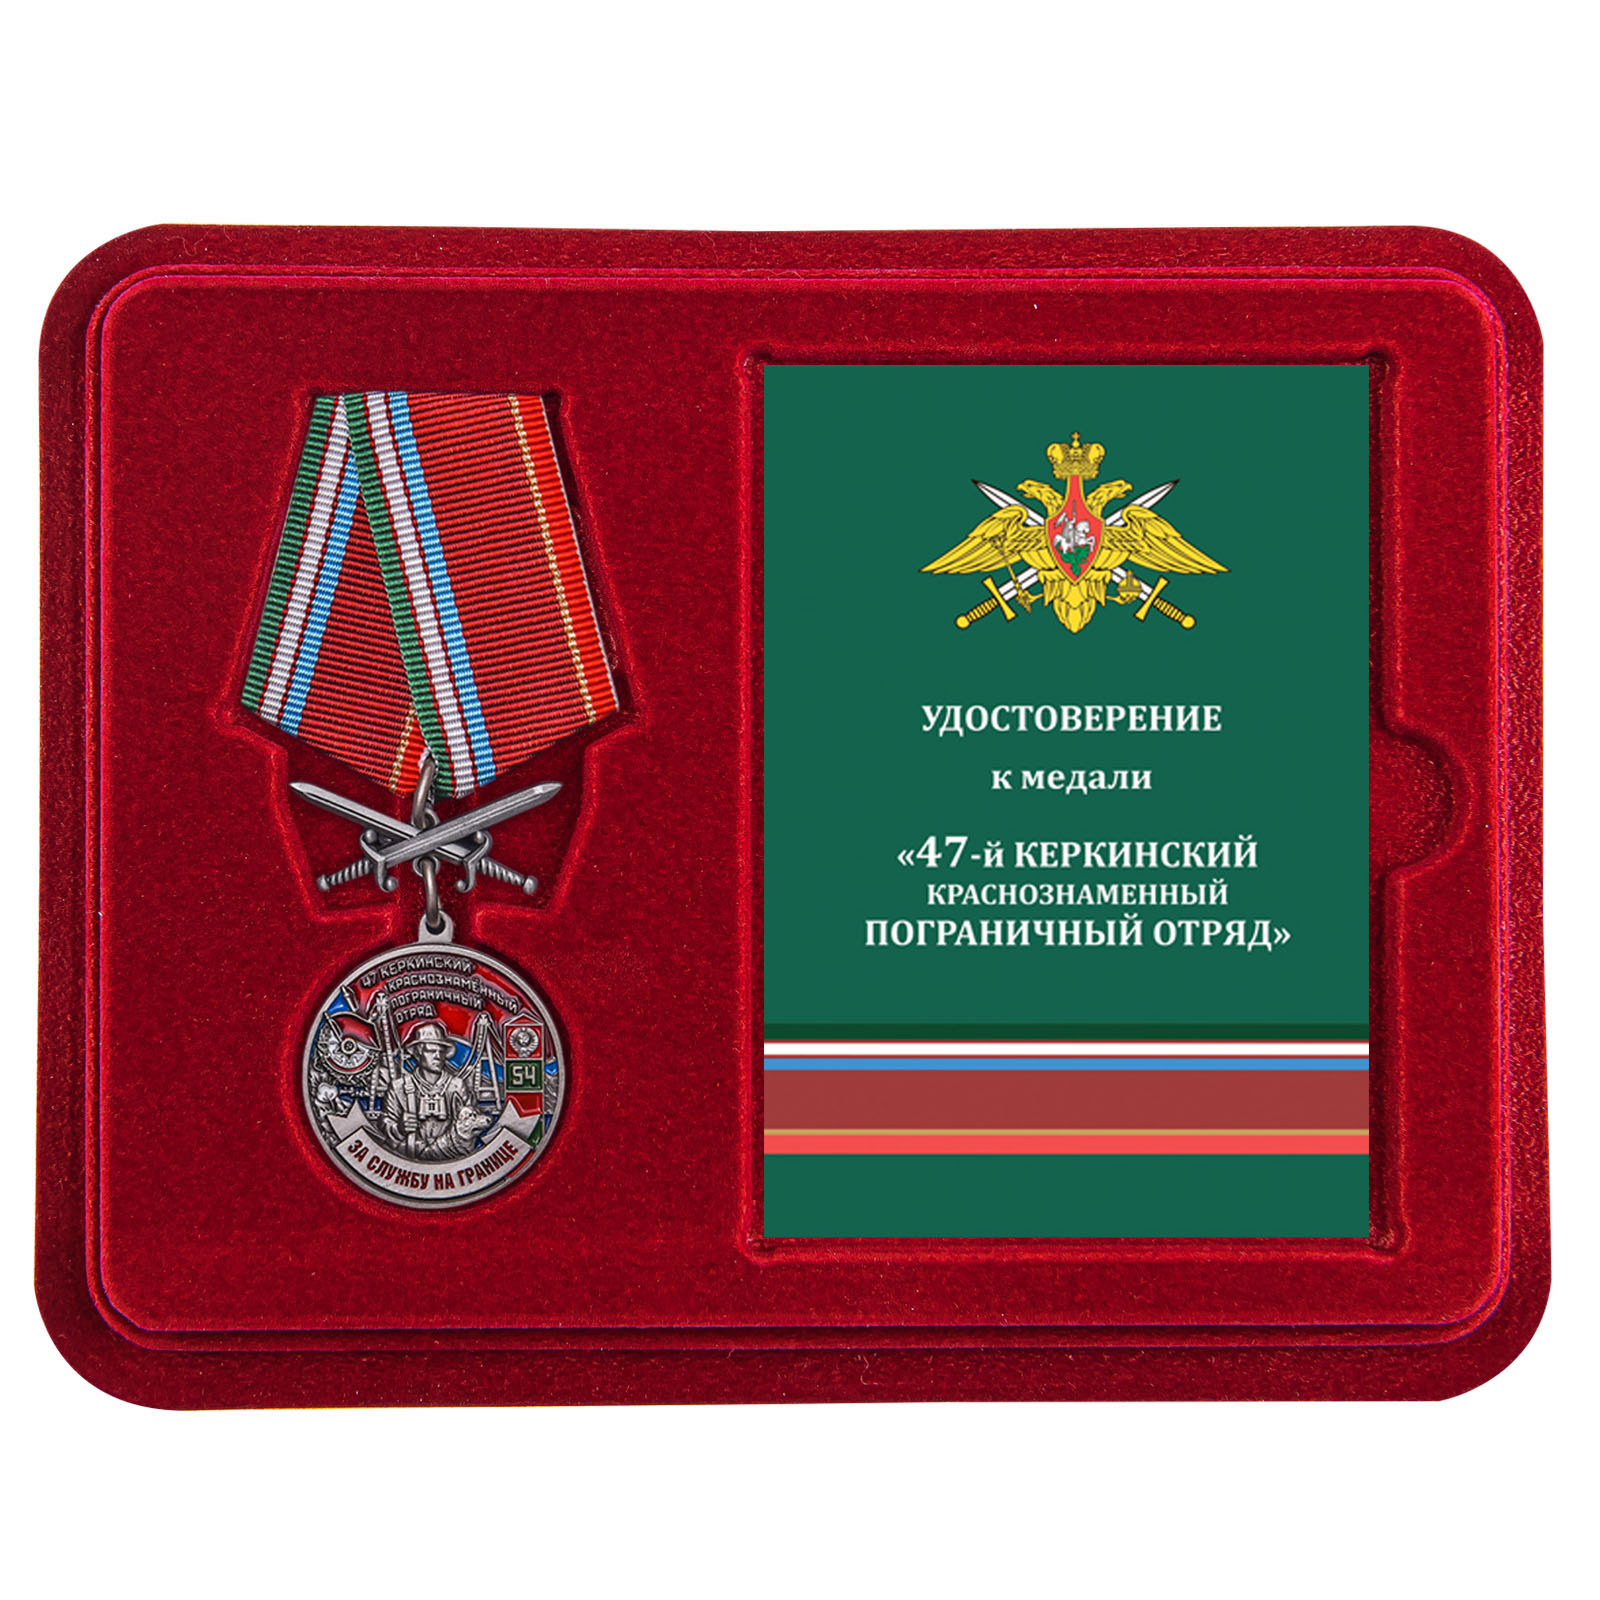 Купить медаль За службу в Керкинском пограничном отряде по лучшей цене